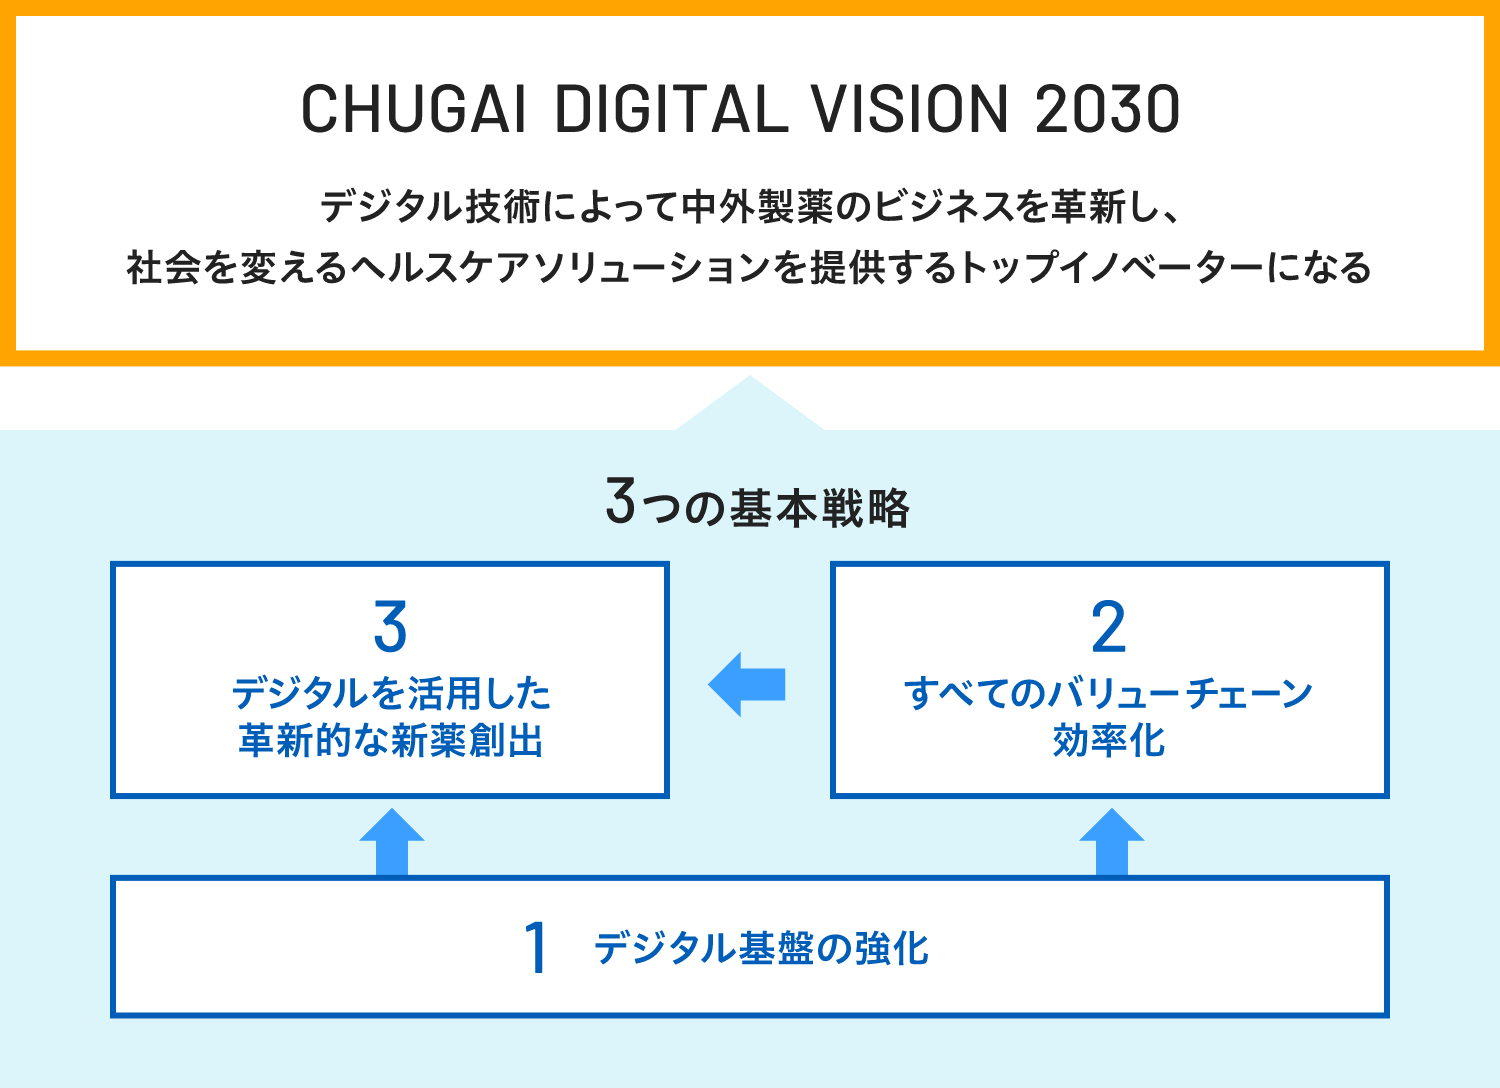 CHUGAI DIGITAL VISION 2030　デジタル技術によって中外製薬のビジネスを革新し、社会を変えるヘルスケアソリューションを提供するトップイノベーターになる　3つの基本戦略　1.デジタル基盤の強化　2.すべてのバリューチェーン効率化　3.デジタルを活用した革新的な新薬創出